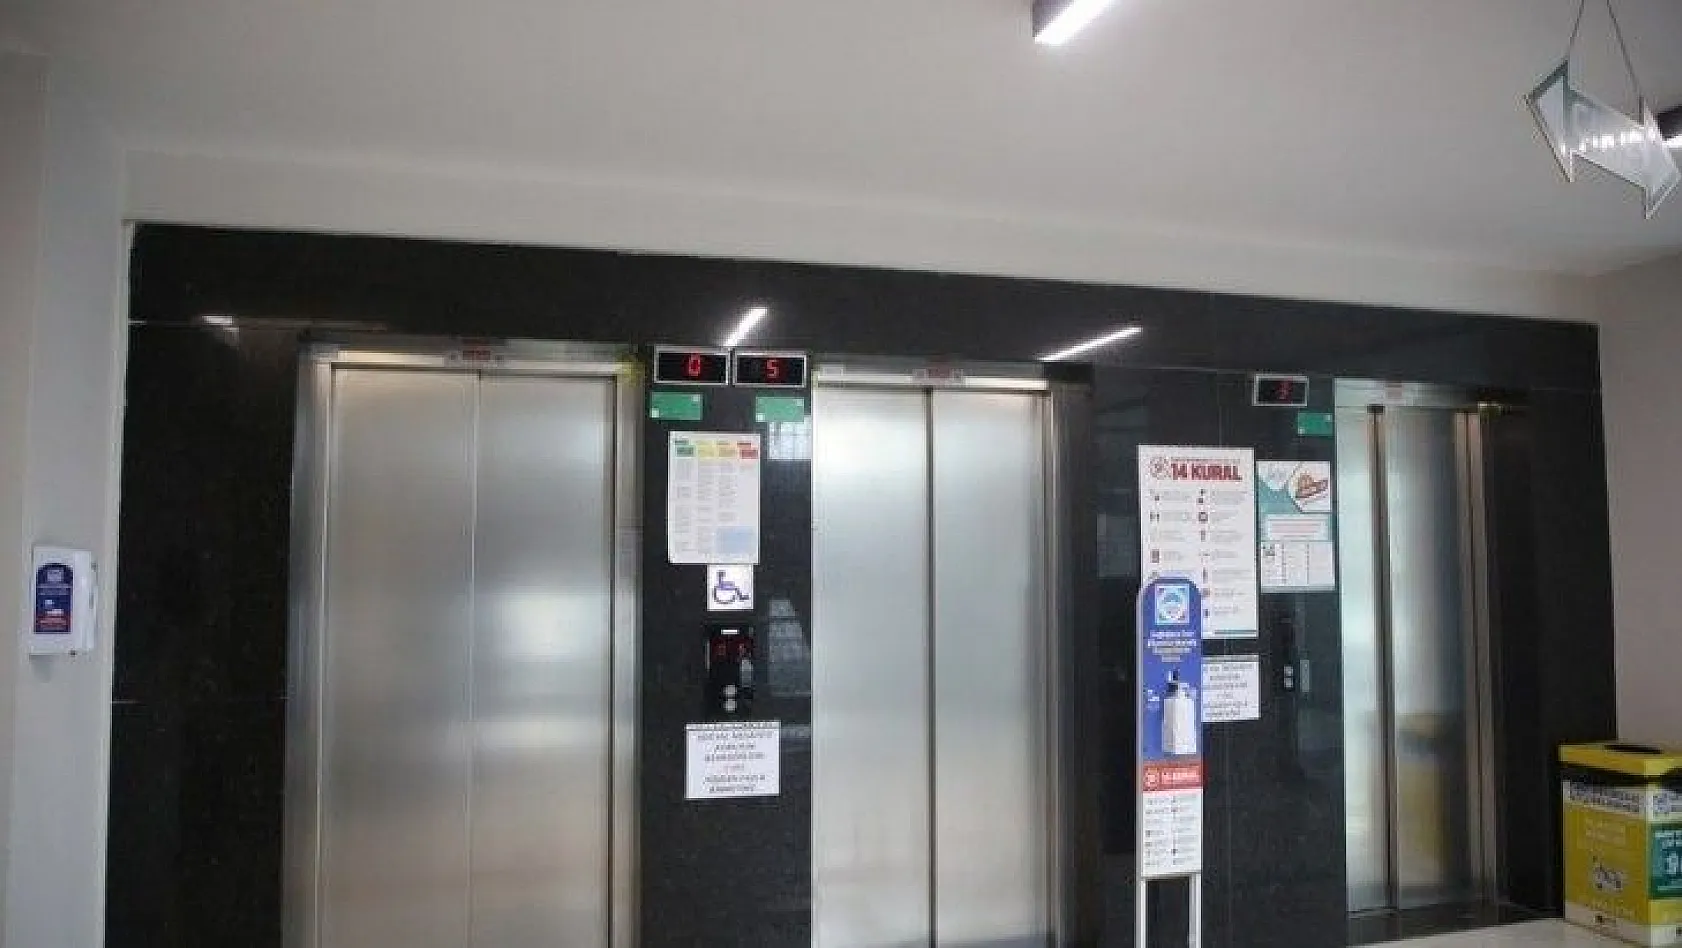 Palancıoğlu: Asansörlerde sorumluluk sigortası zorunlu